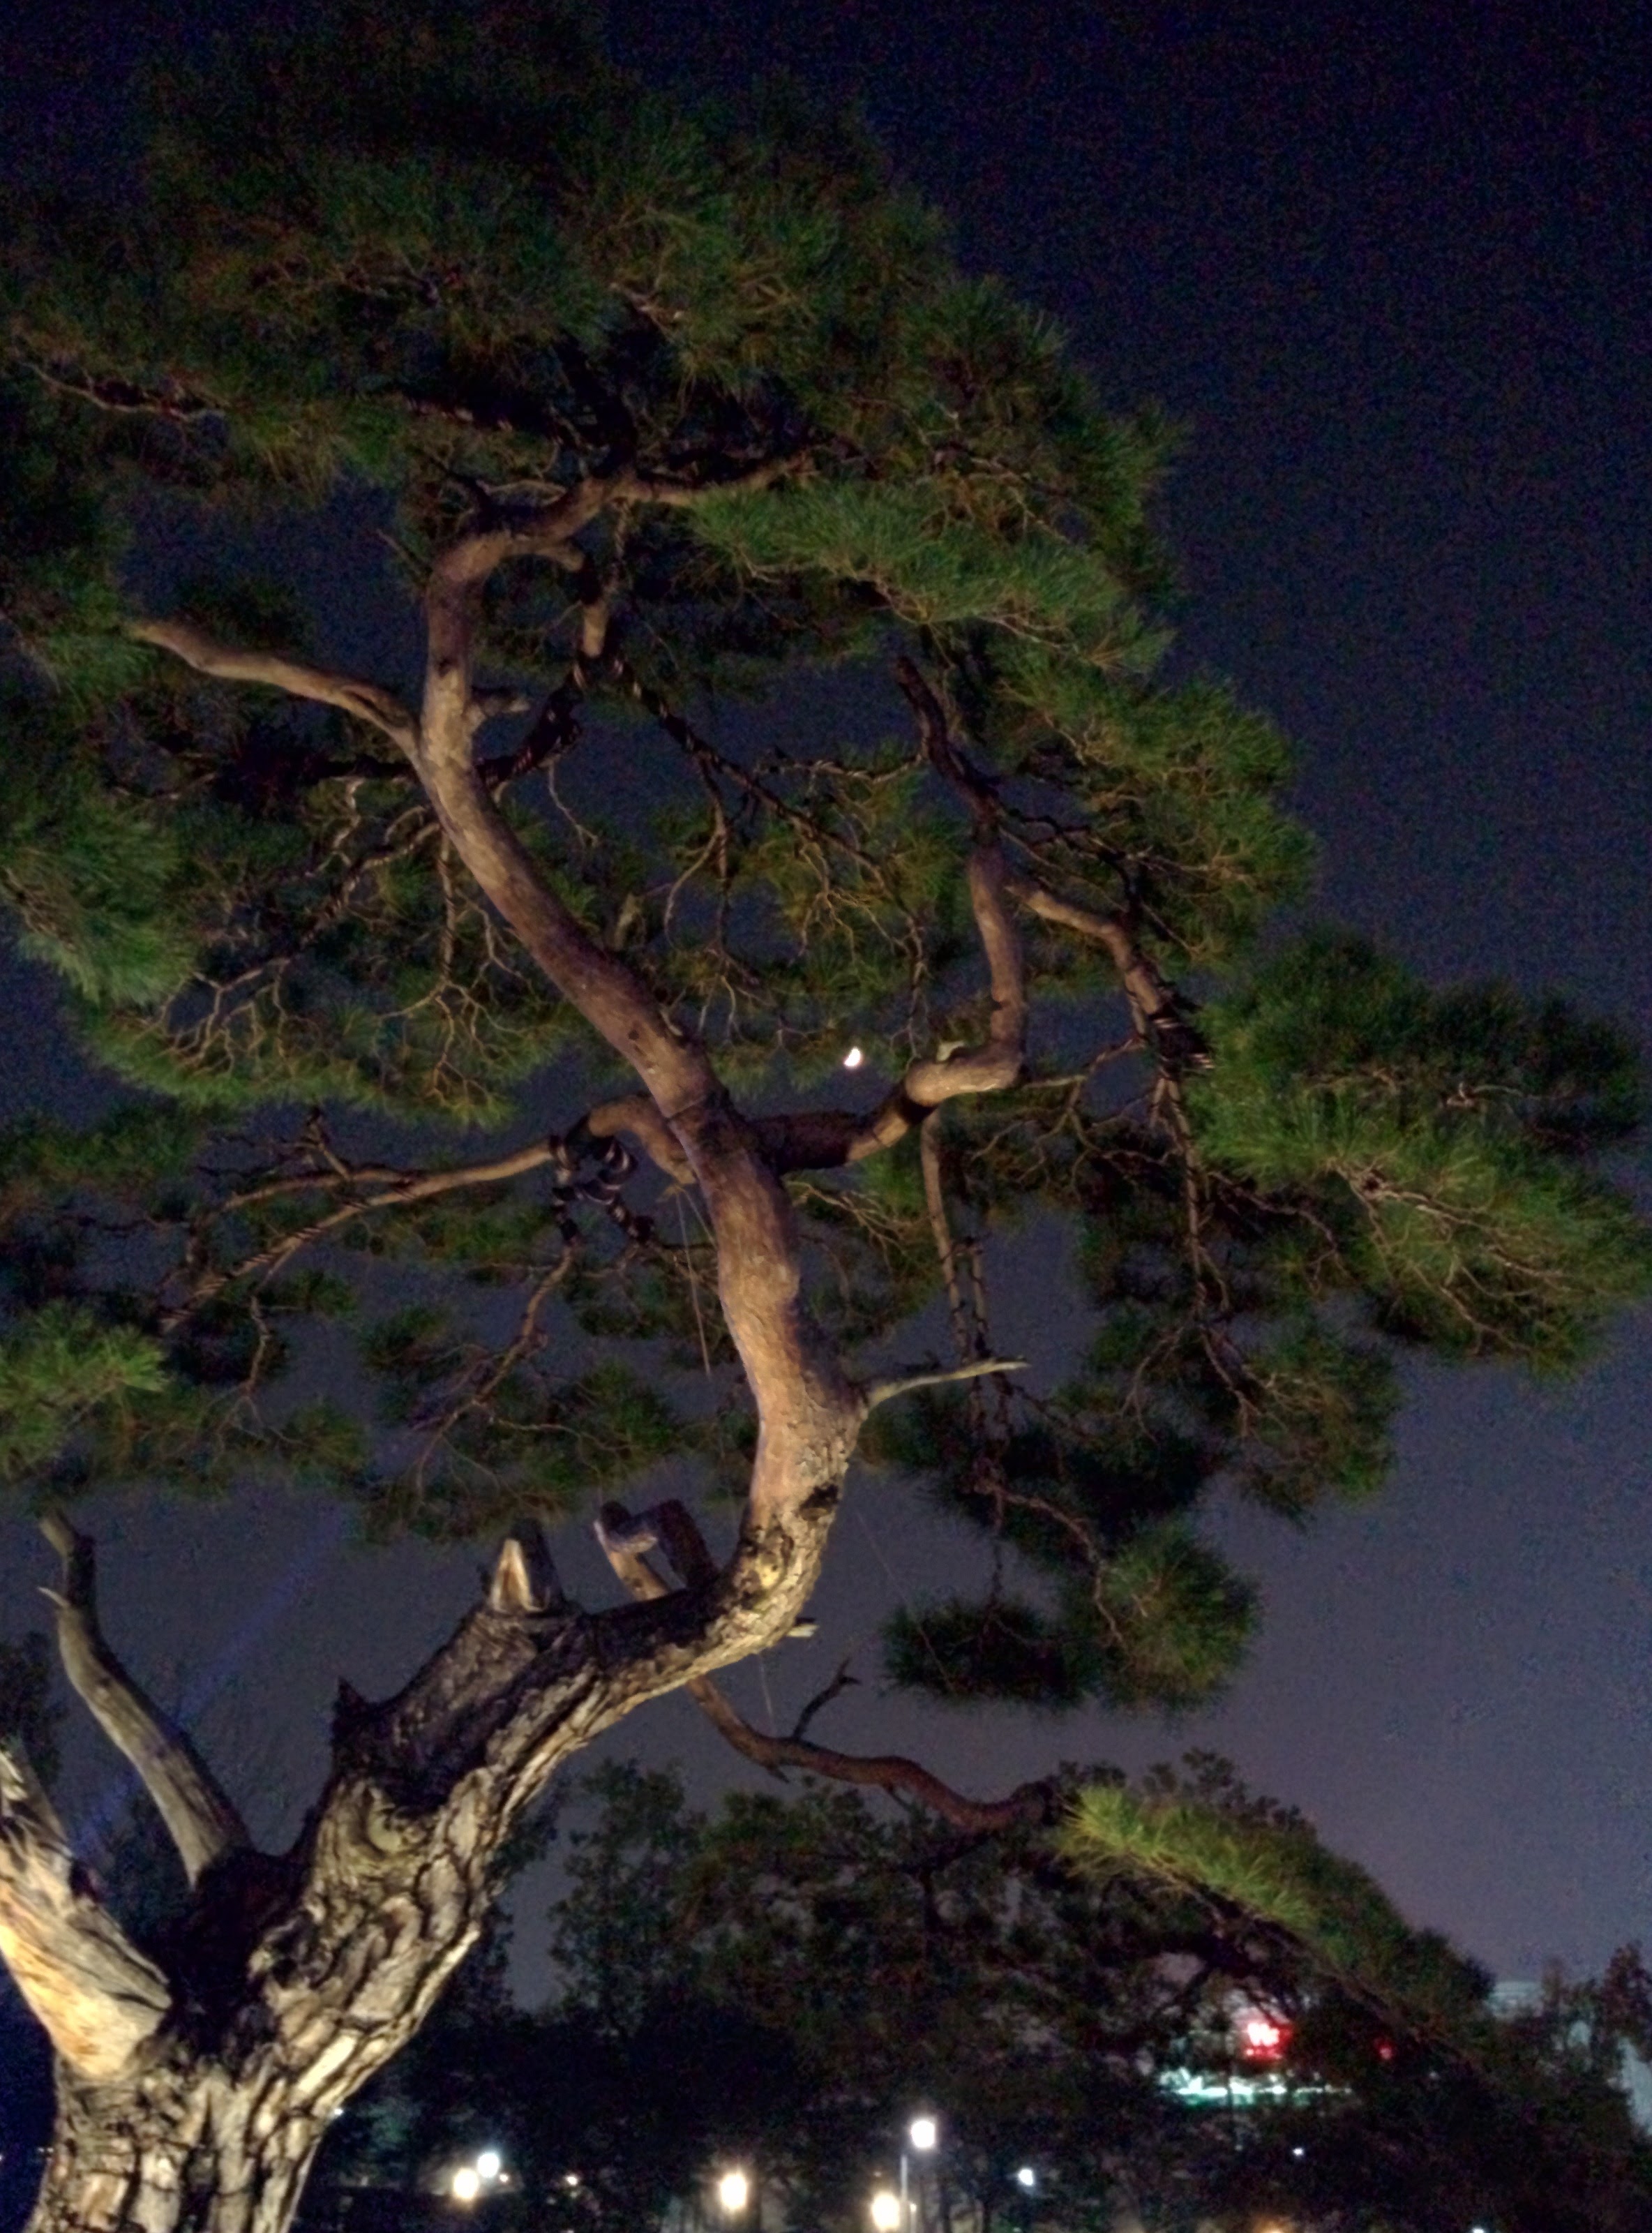 IMG_20151020_191932.jpg 유성국화전시회 야경, 달과 소나무